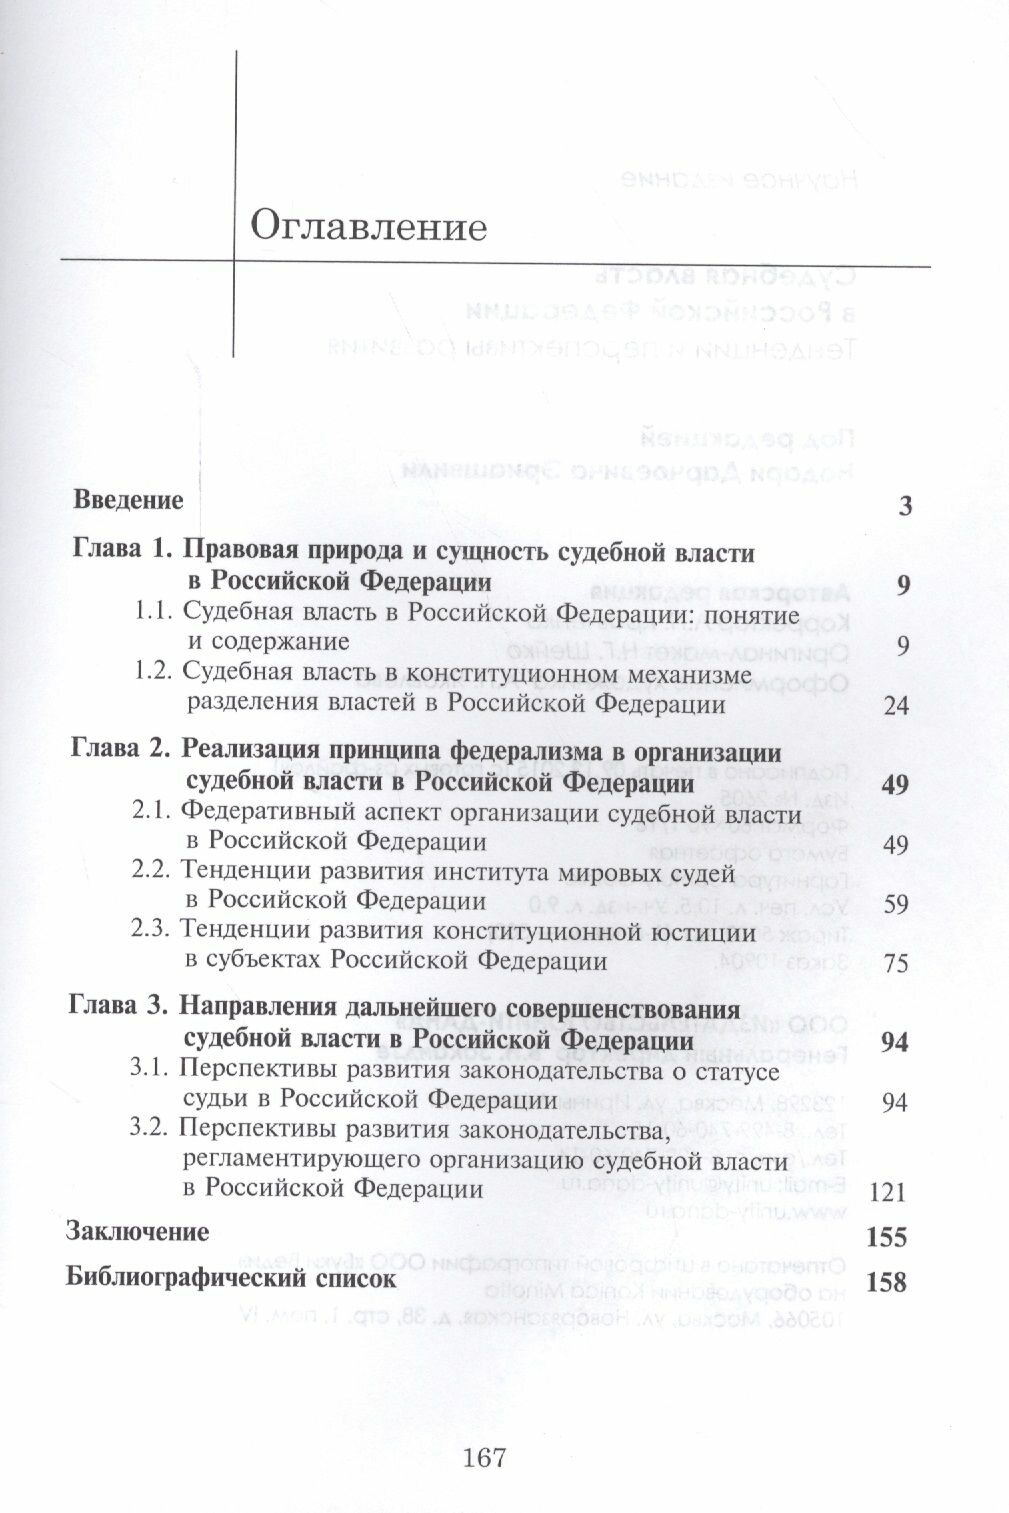 Судебная власть в Российской Федерации. Тенденции и перспективы развития - фото №3